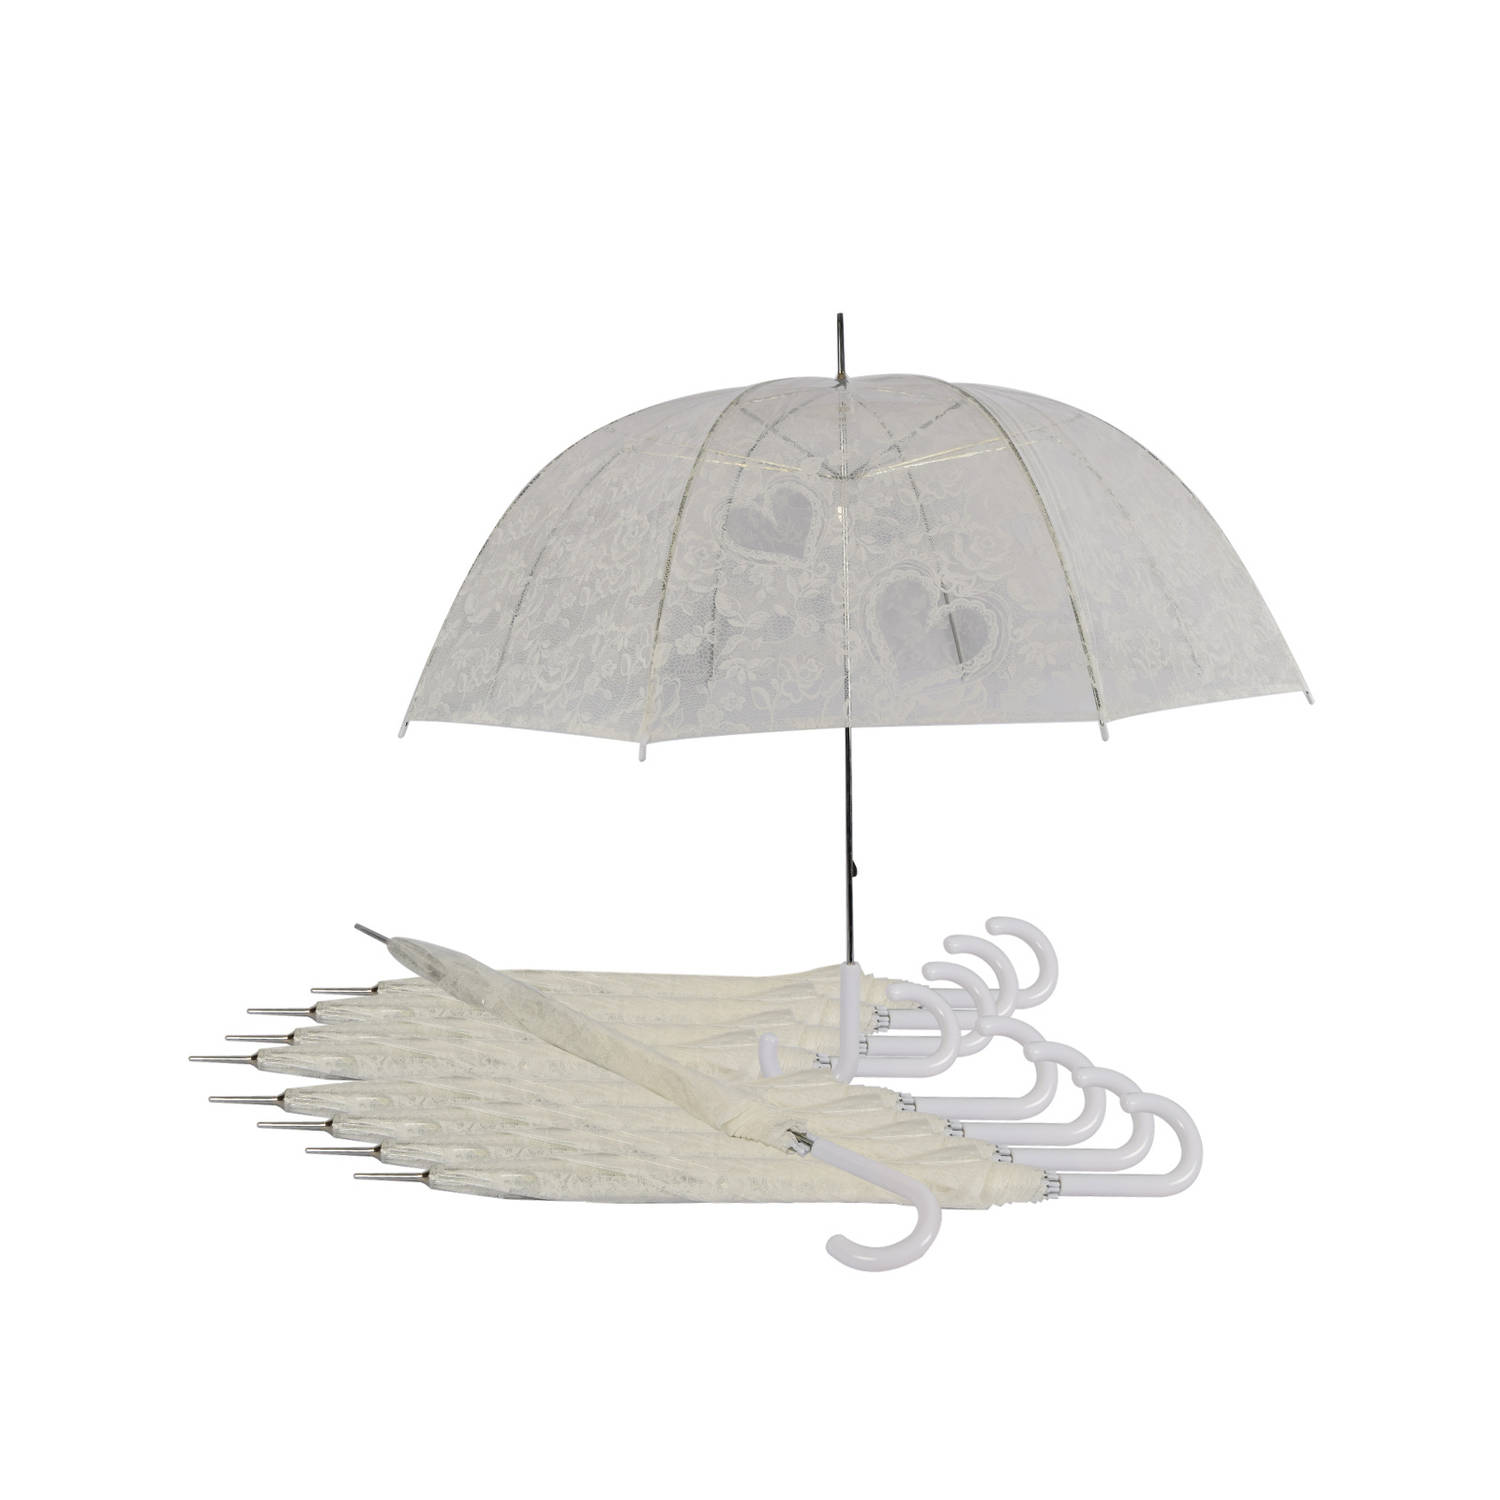 Set van 10 Doorzichtige Trouwparaplu's: Onmisbaar Accessoire voor een Magische Bruiloft - Transparante Paraplu met Hartjes | Windproof | 98cm Diameter